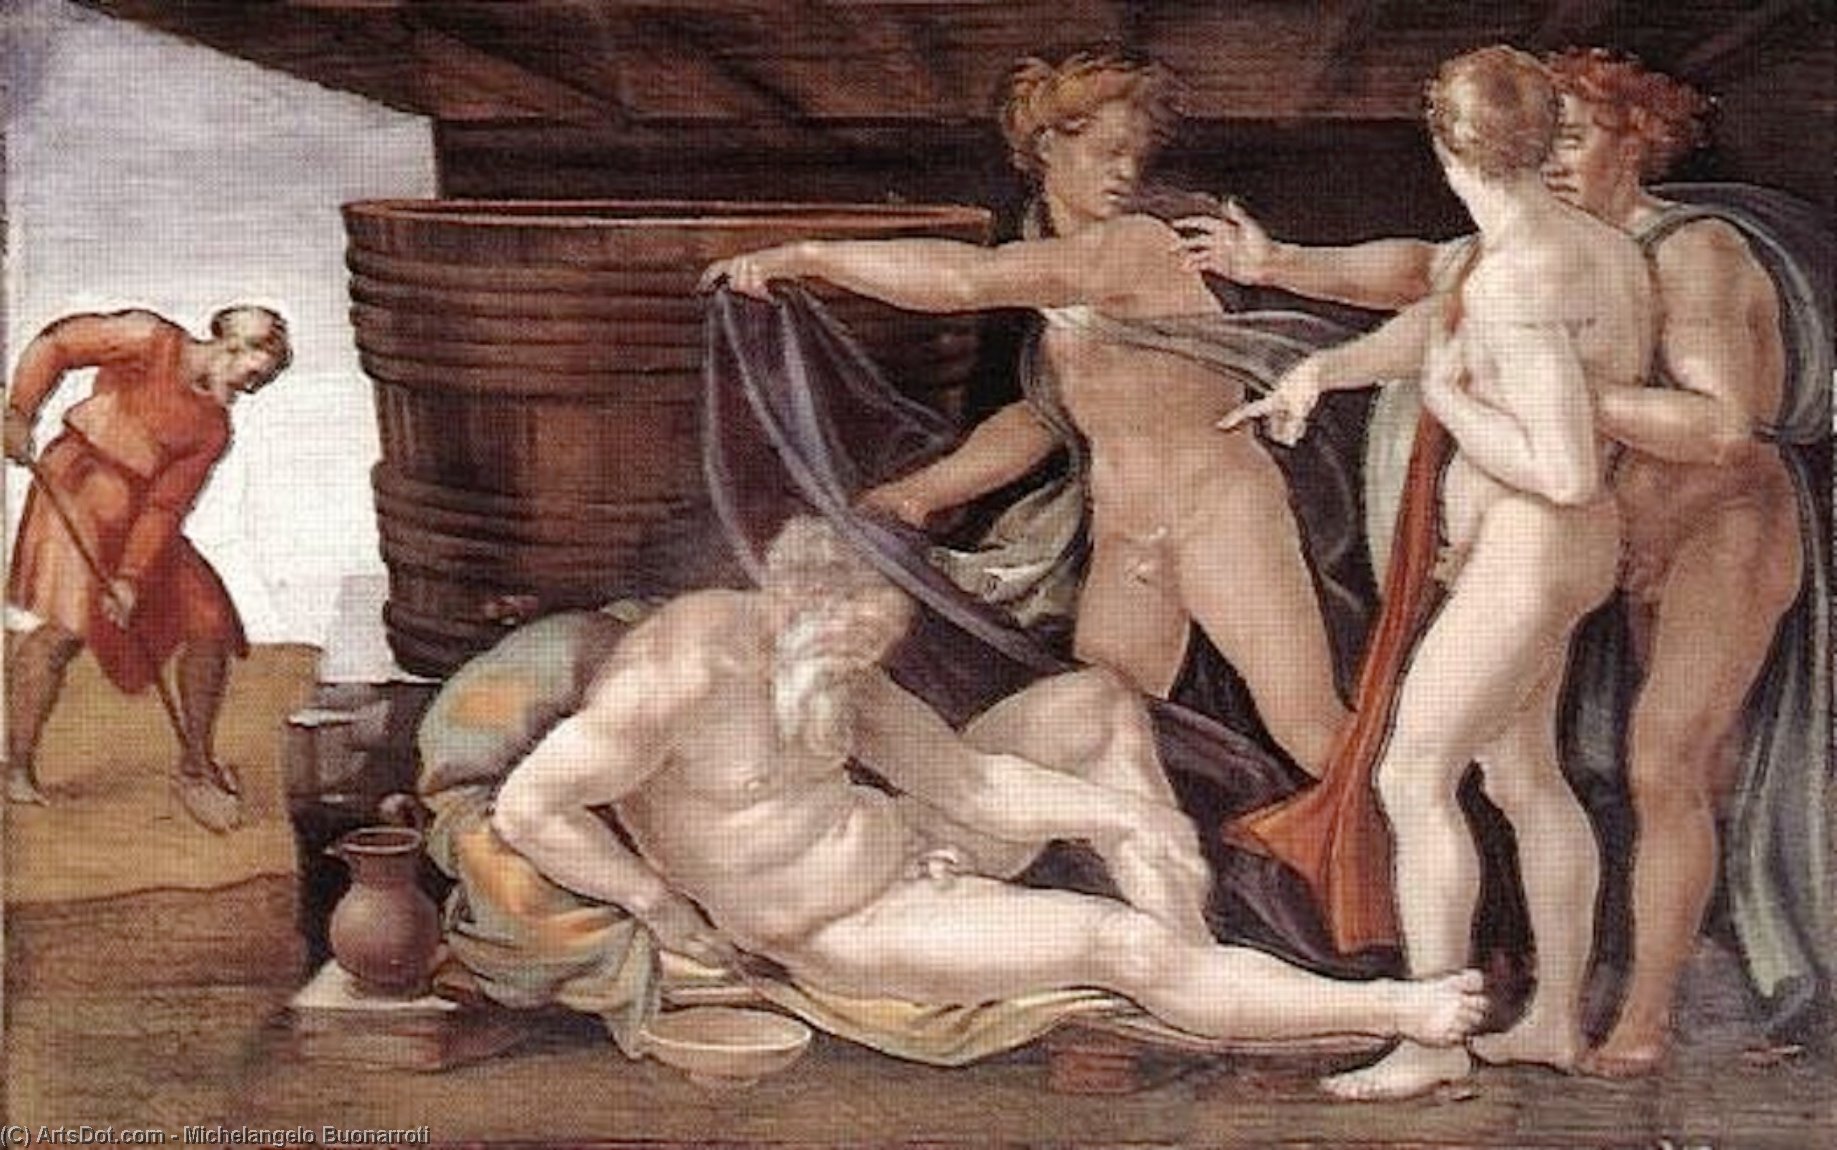 WikiOO.org - Encyclopedia of Fine Arts - Lukisan, Artwork Michelangelo Buonarroti - Drunkenness of Noah